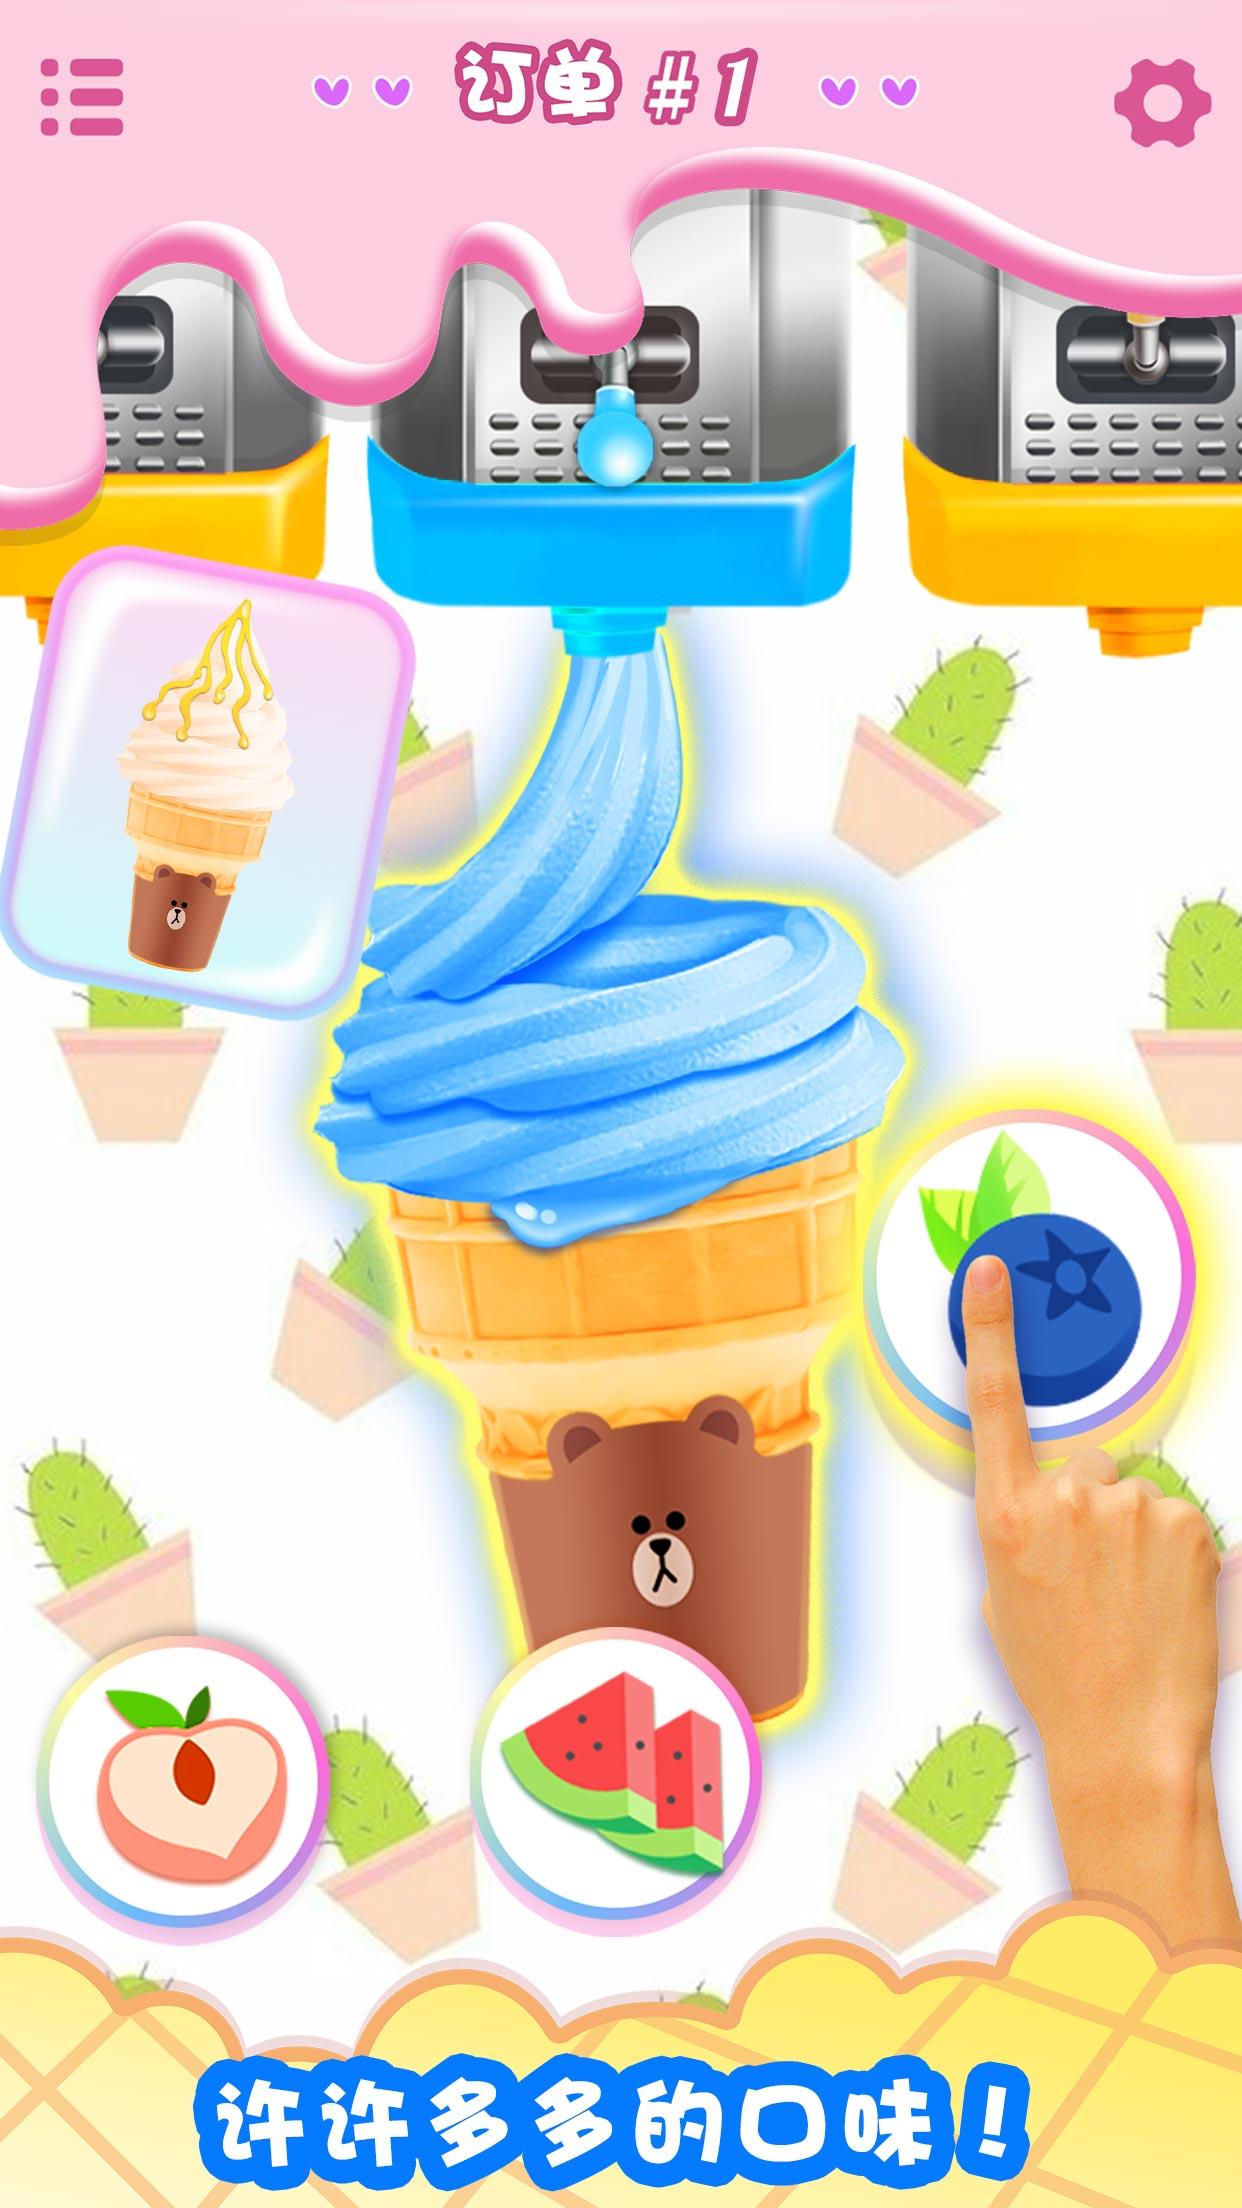 做饭游戏: 做冰淇淋休闲小游戏游戏截图